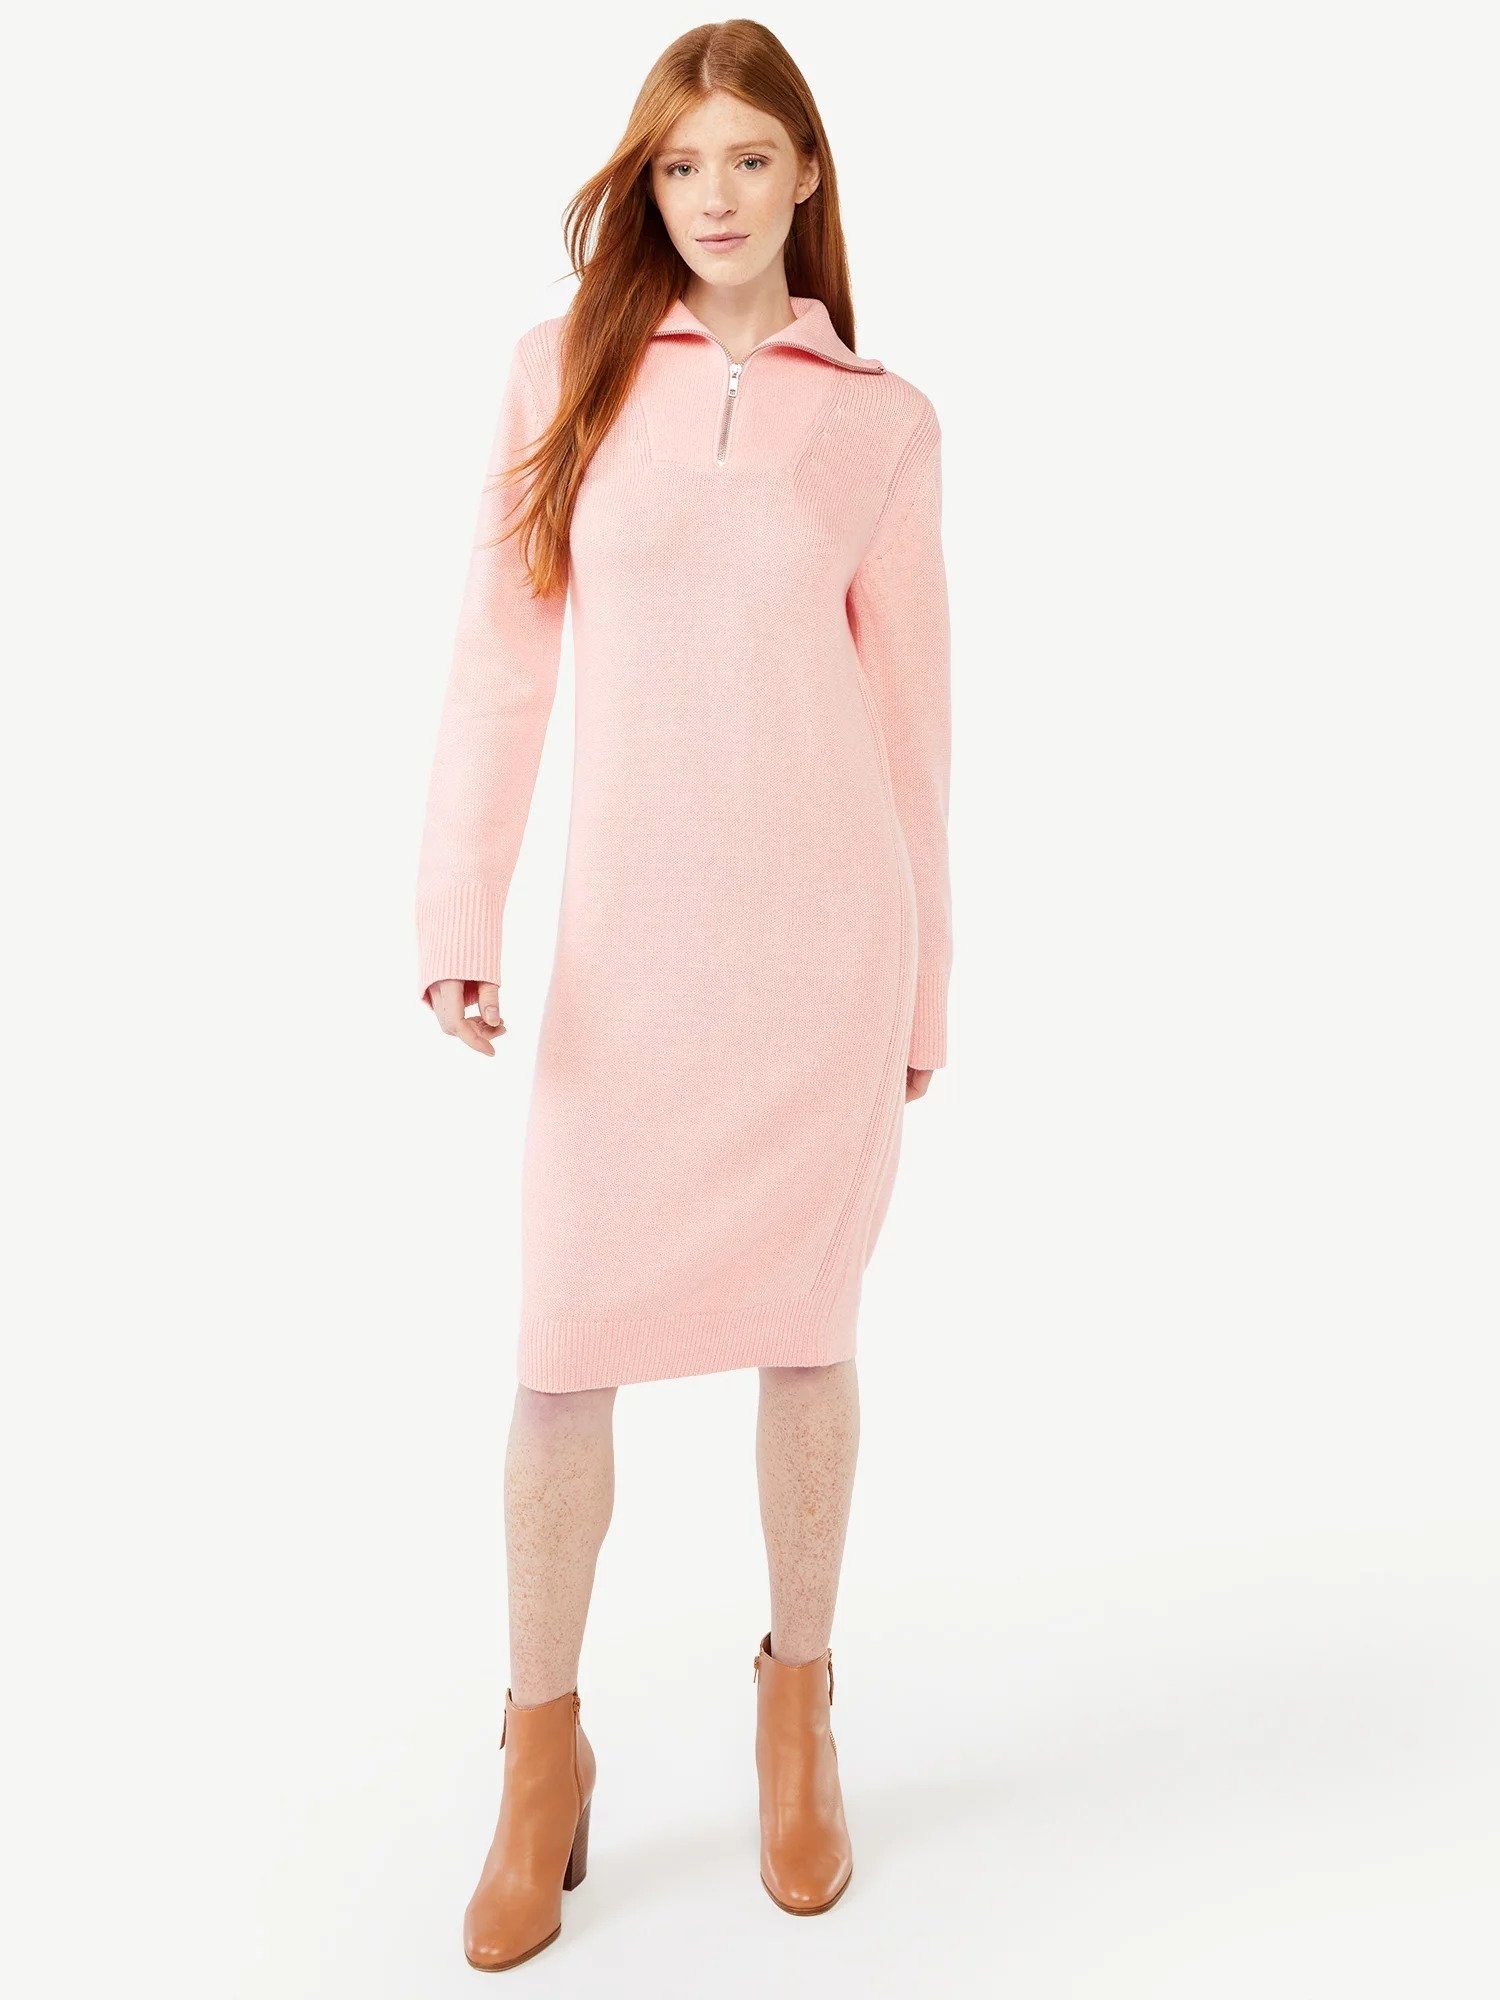 Model wearing half-zip sweater dress in light pink